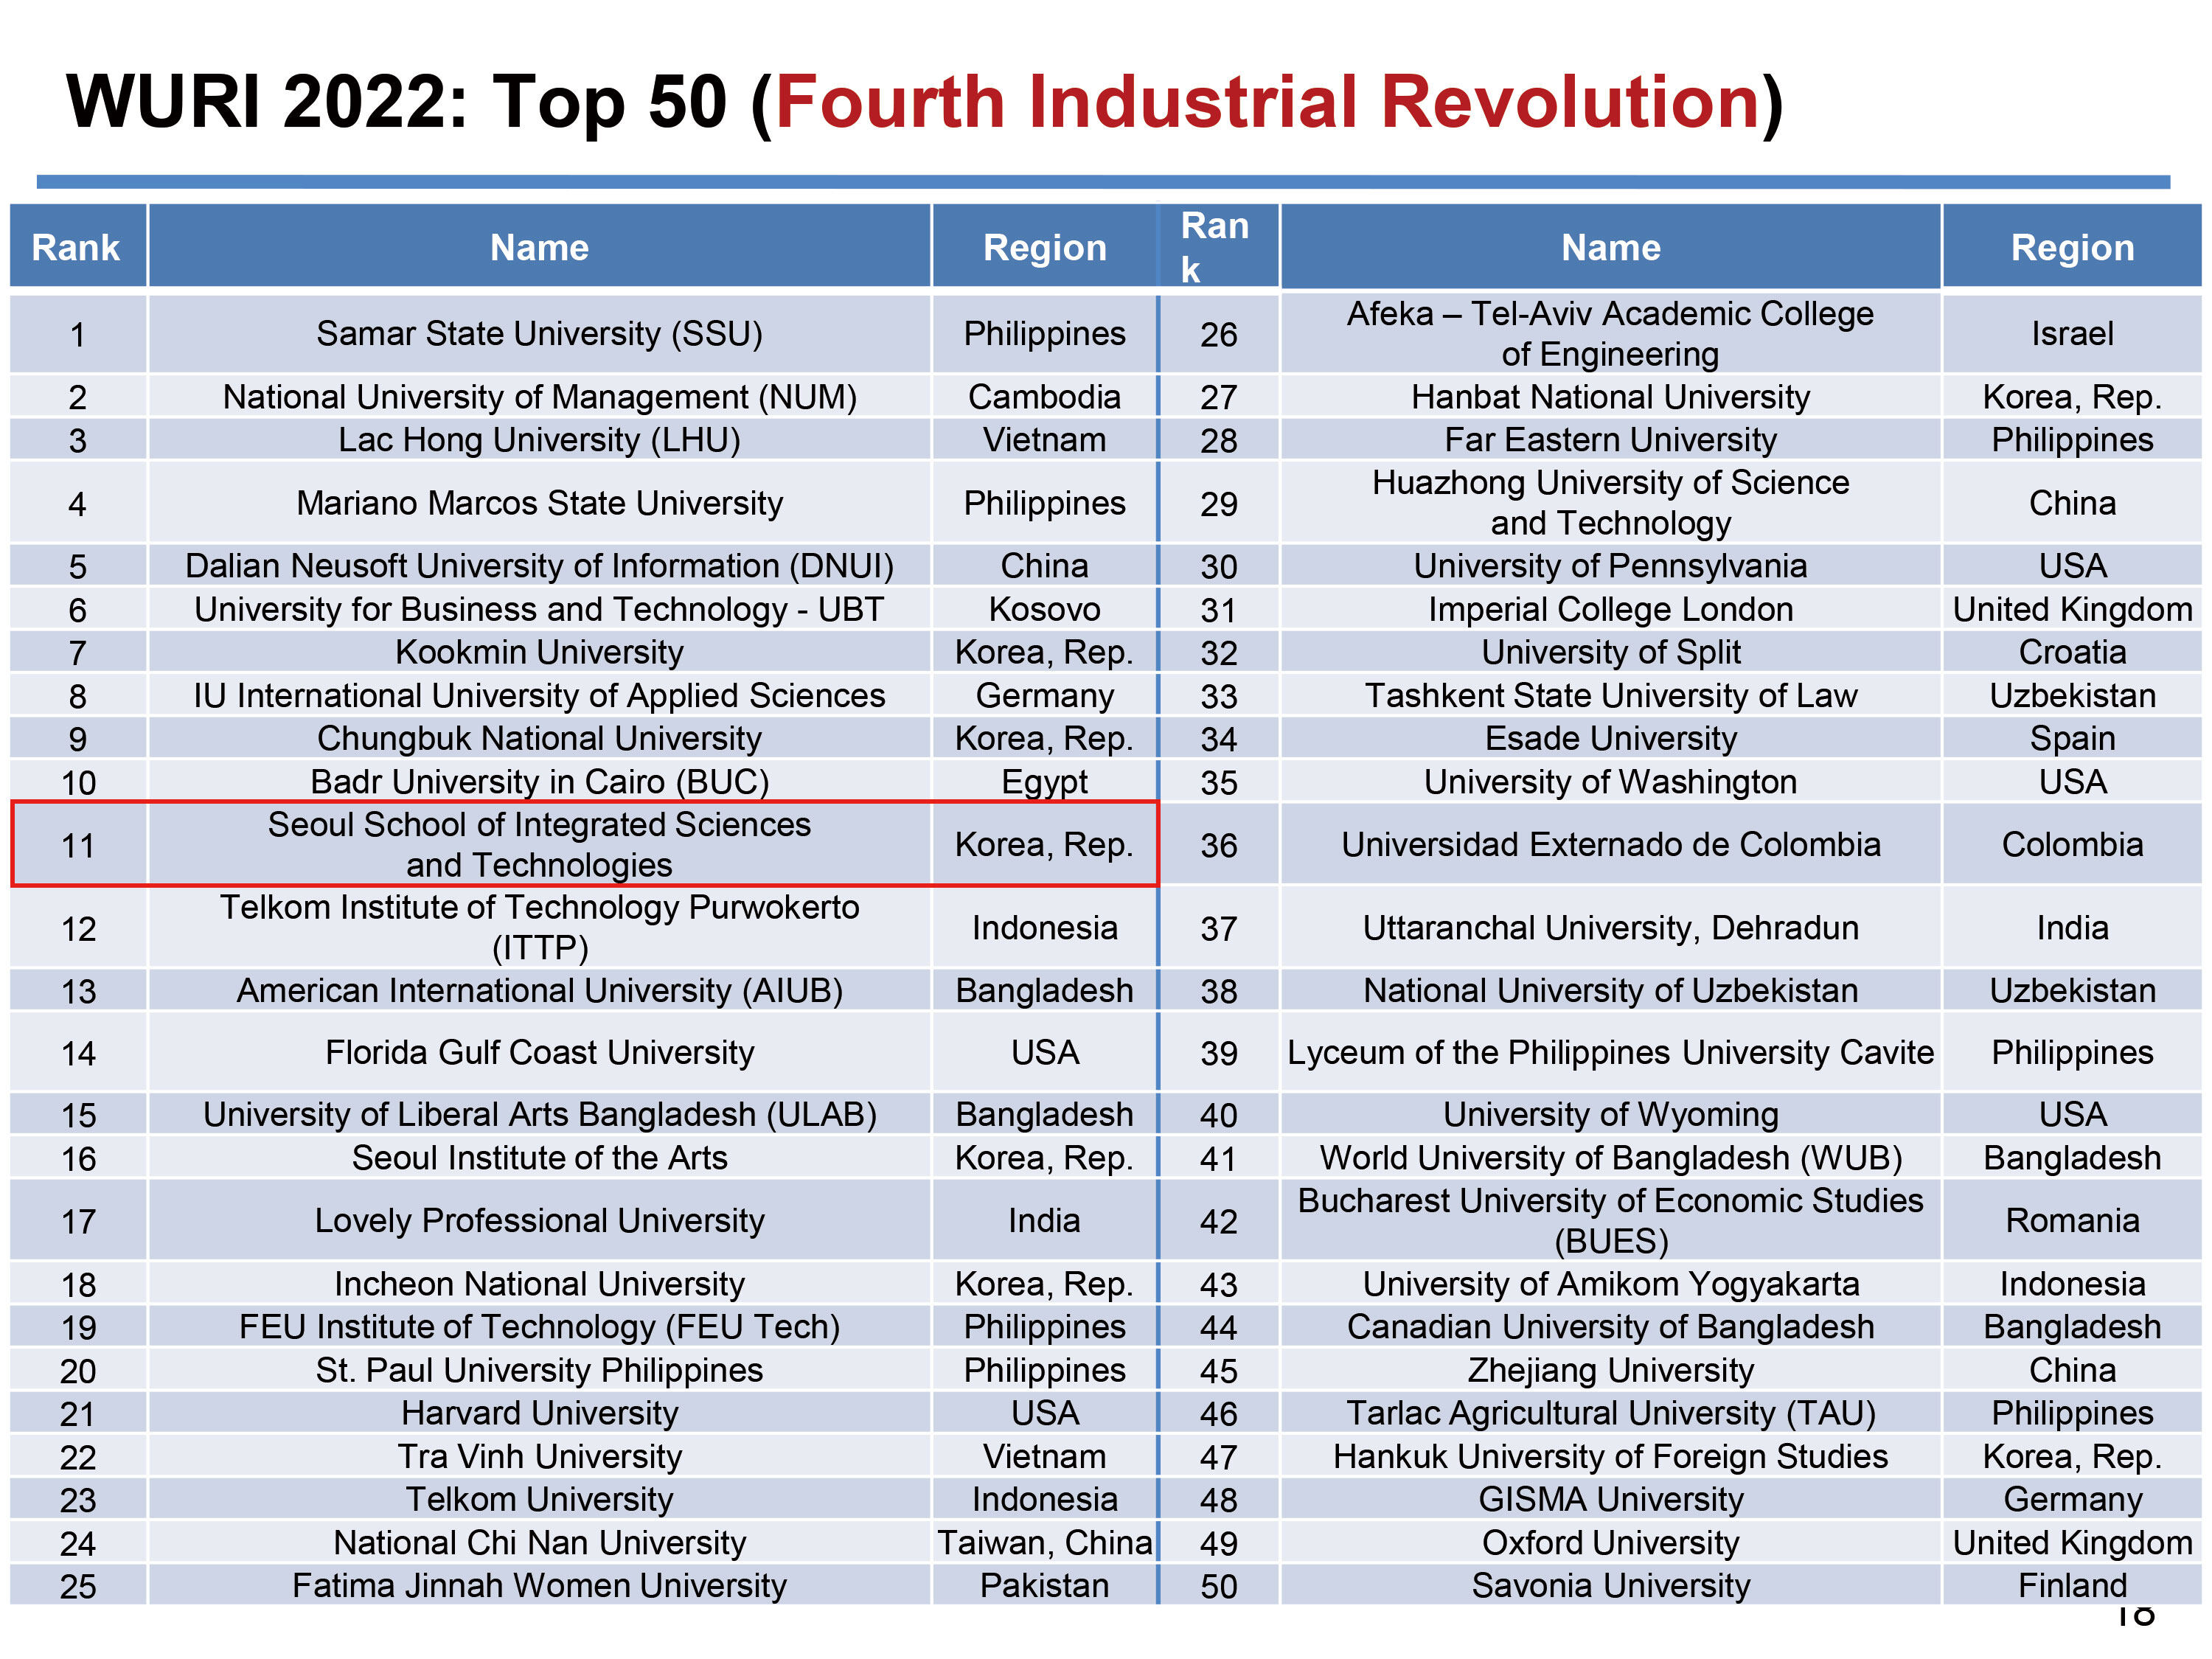 韩国首尔科大在Fourth Industrial Revolution（第四次工业革命）标准中排名第11位